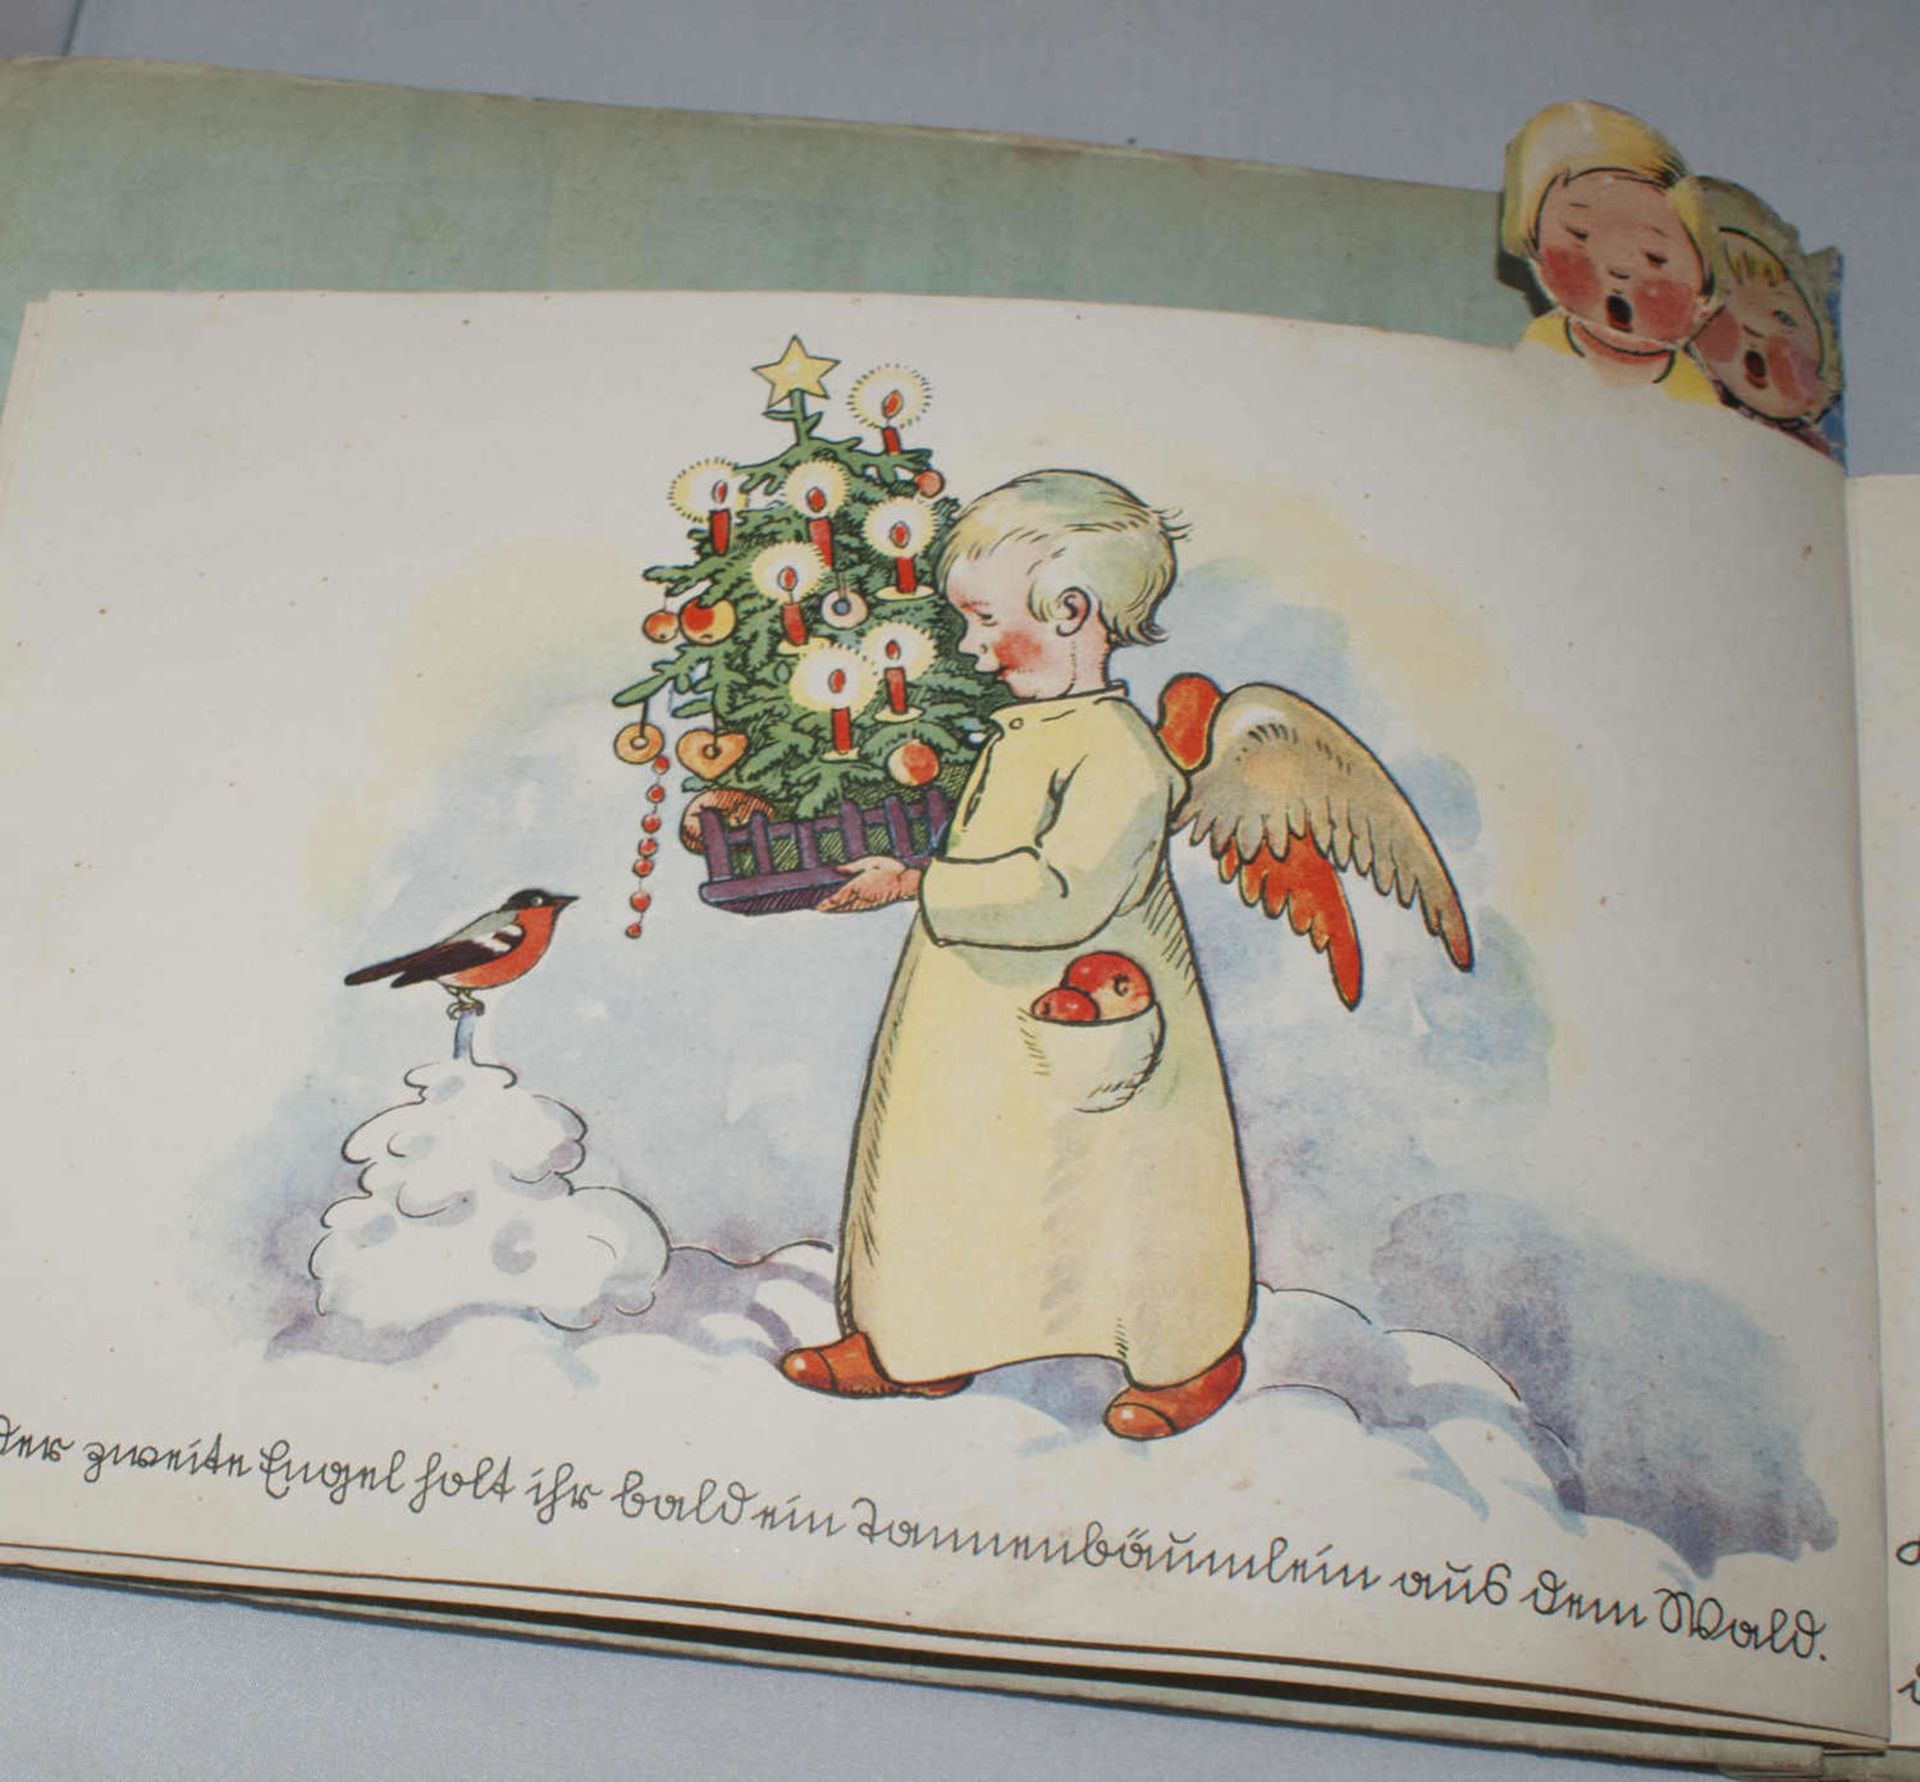 The Christmas Angel by Hans Probst and Else Wenz-Vietor,Publisher: Mainz, Jos. Scholz. Publicat - Bild 3 aus 3